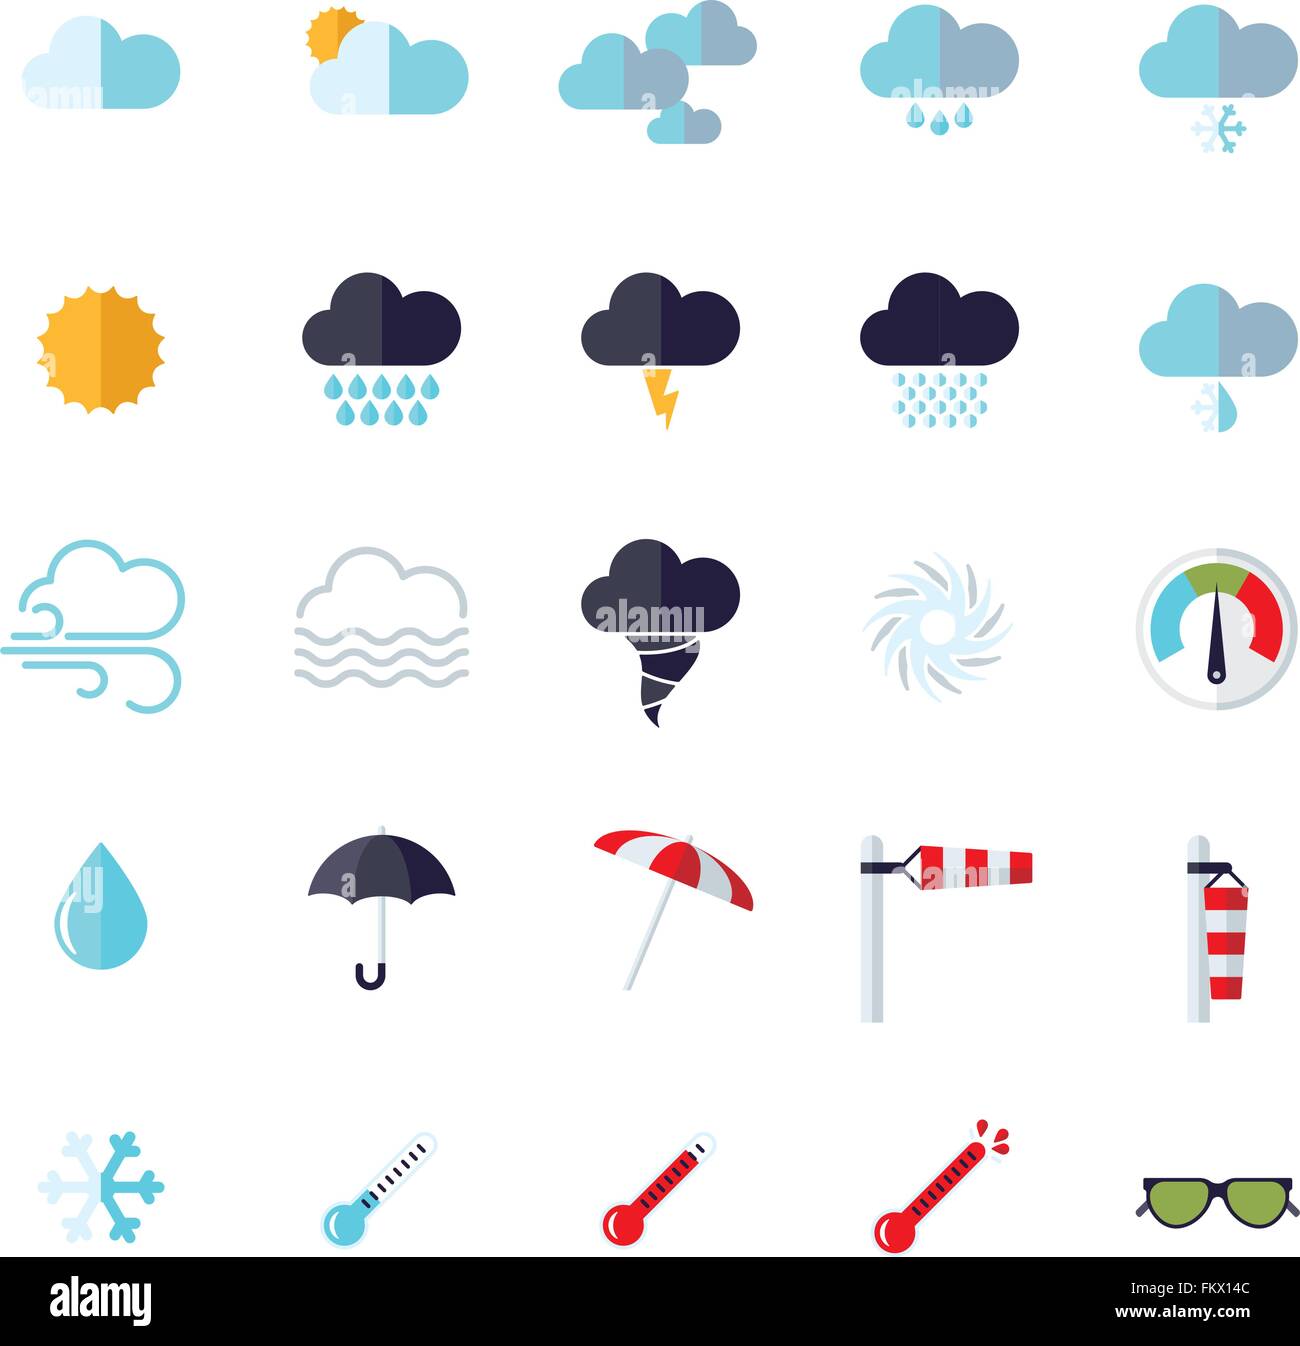 Collection de météo et climat design plat connexes vector icons Illustration de Vecteur